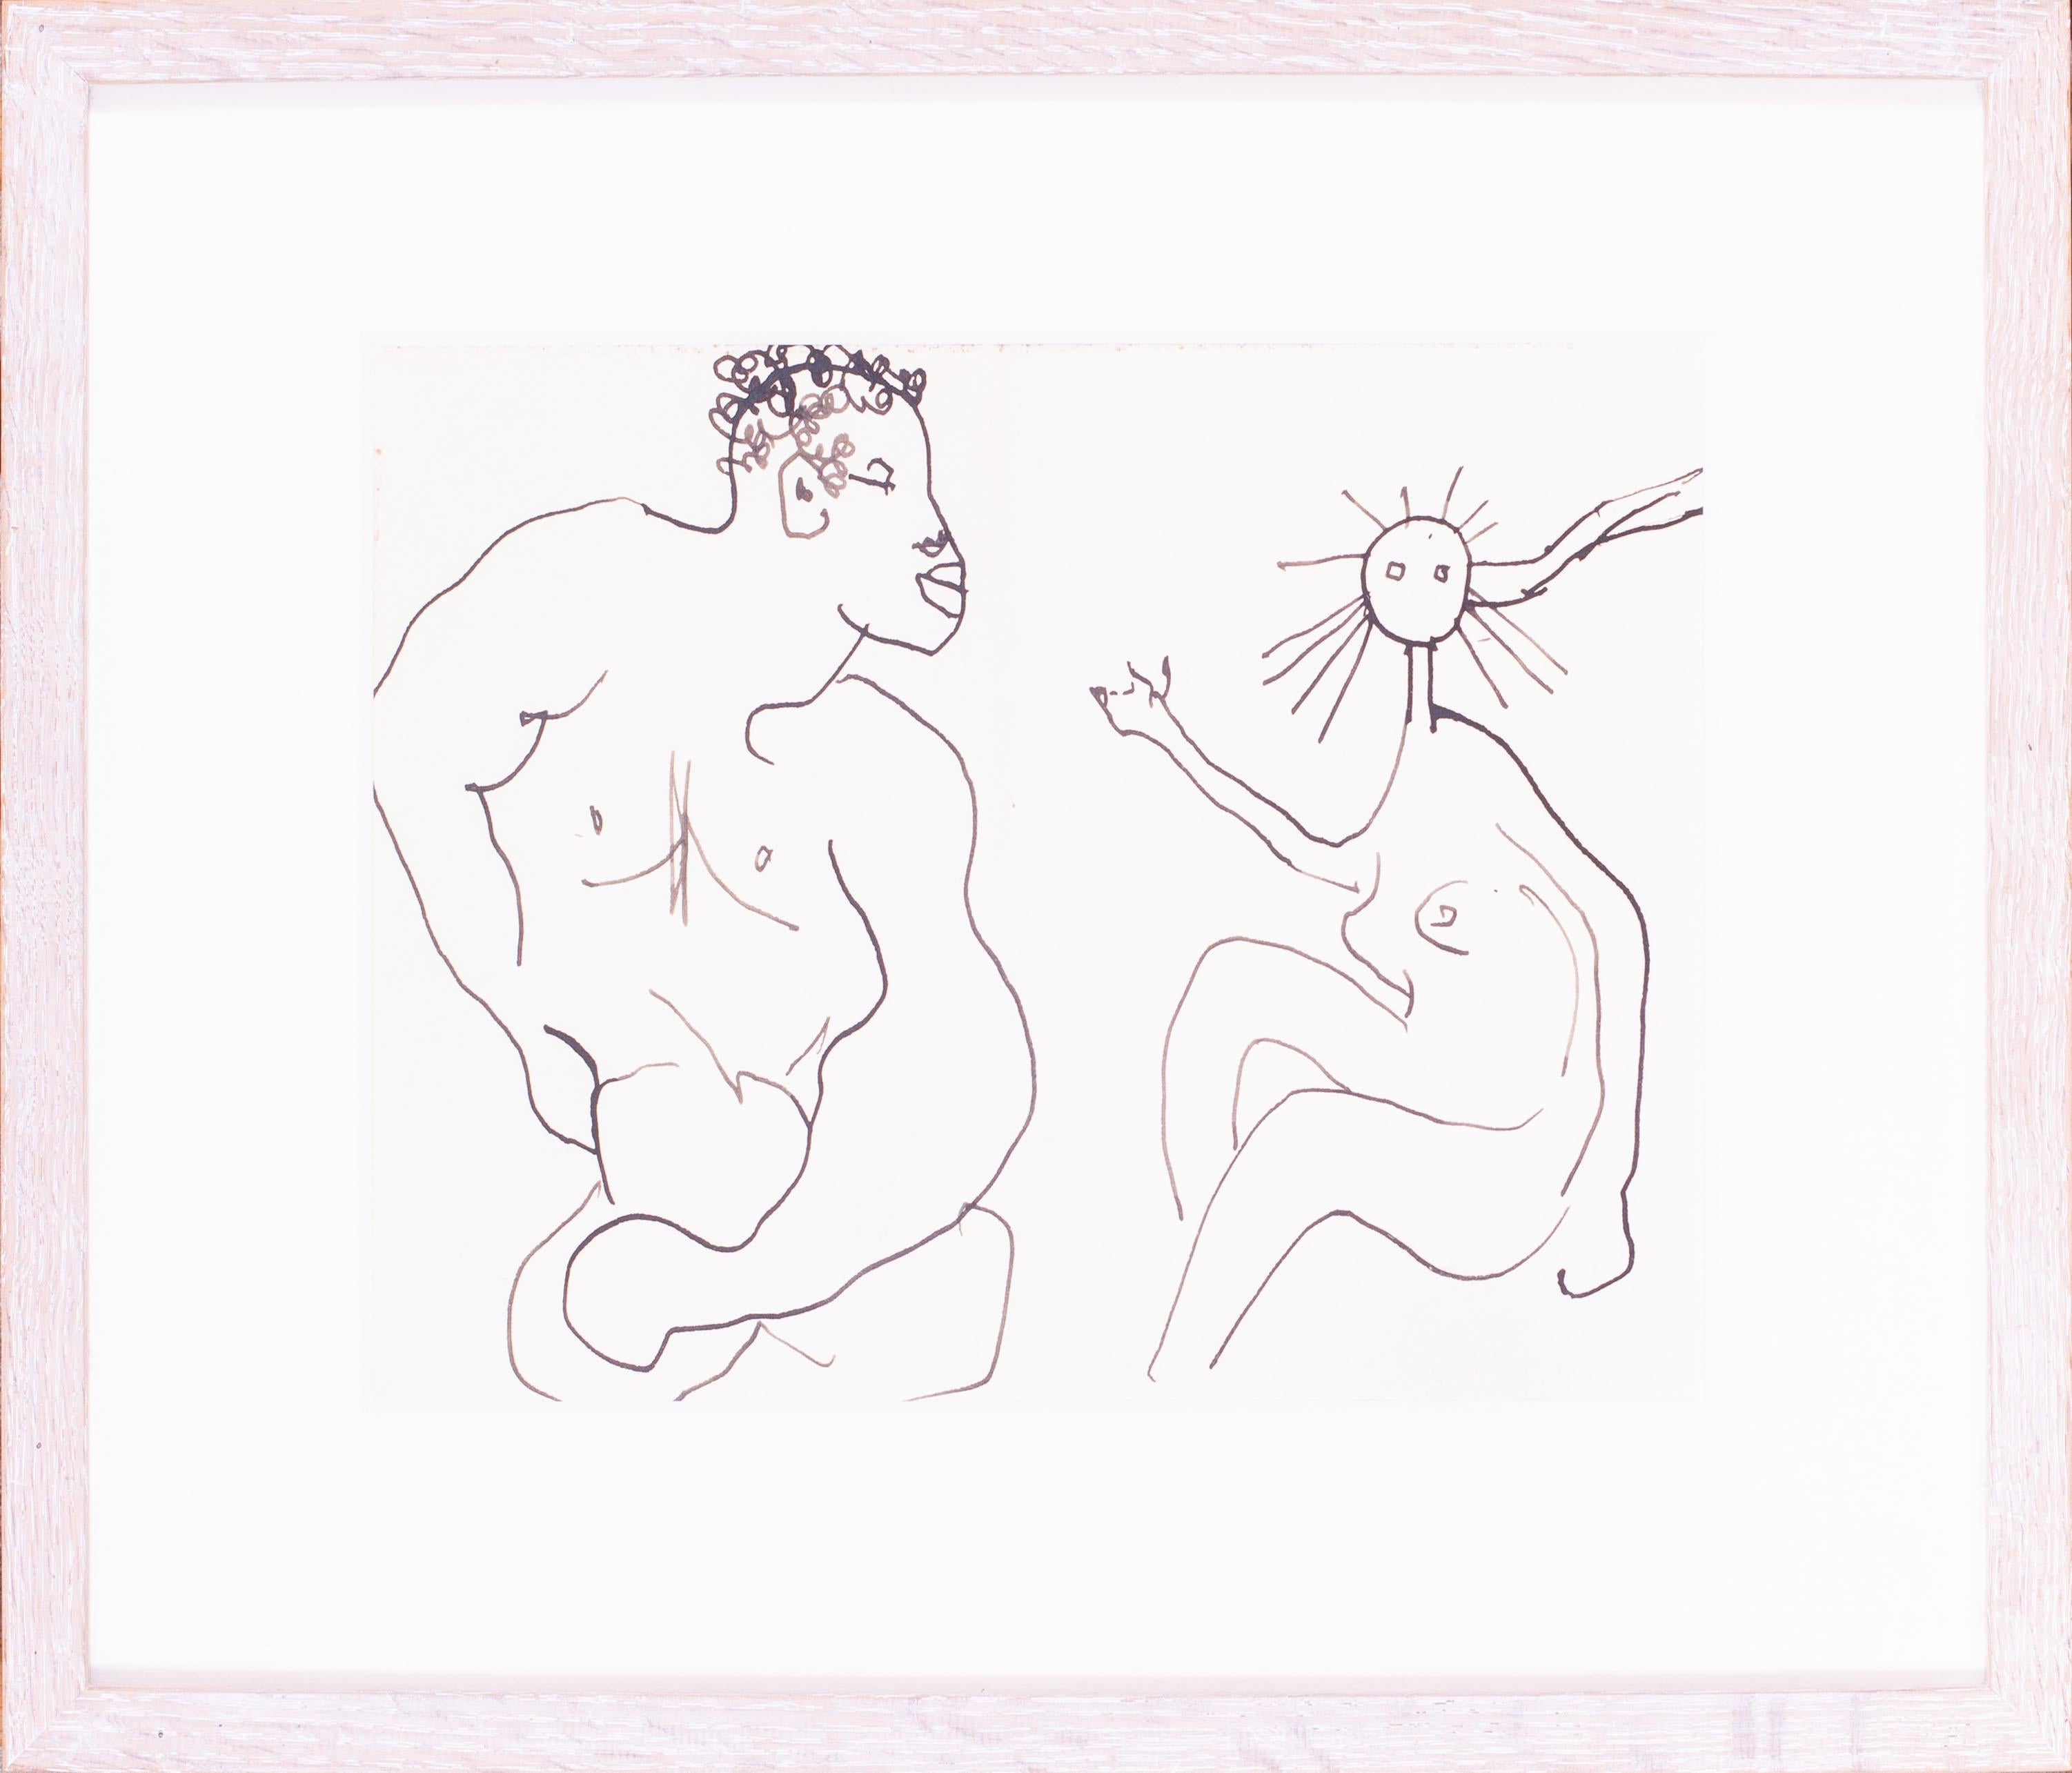 Ein sehr auffälliges und lustiges abstraktes Bild von zwei nackten Figuren des modernen britischen Künstlers Roger Hilton.

Roger Hilton CBE (1911-1975) war ein Pionier der abstrakten Kunst im Großbritannien der Nachkriegszeit. Er wird oft mit der